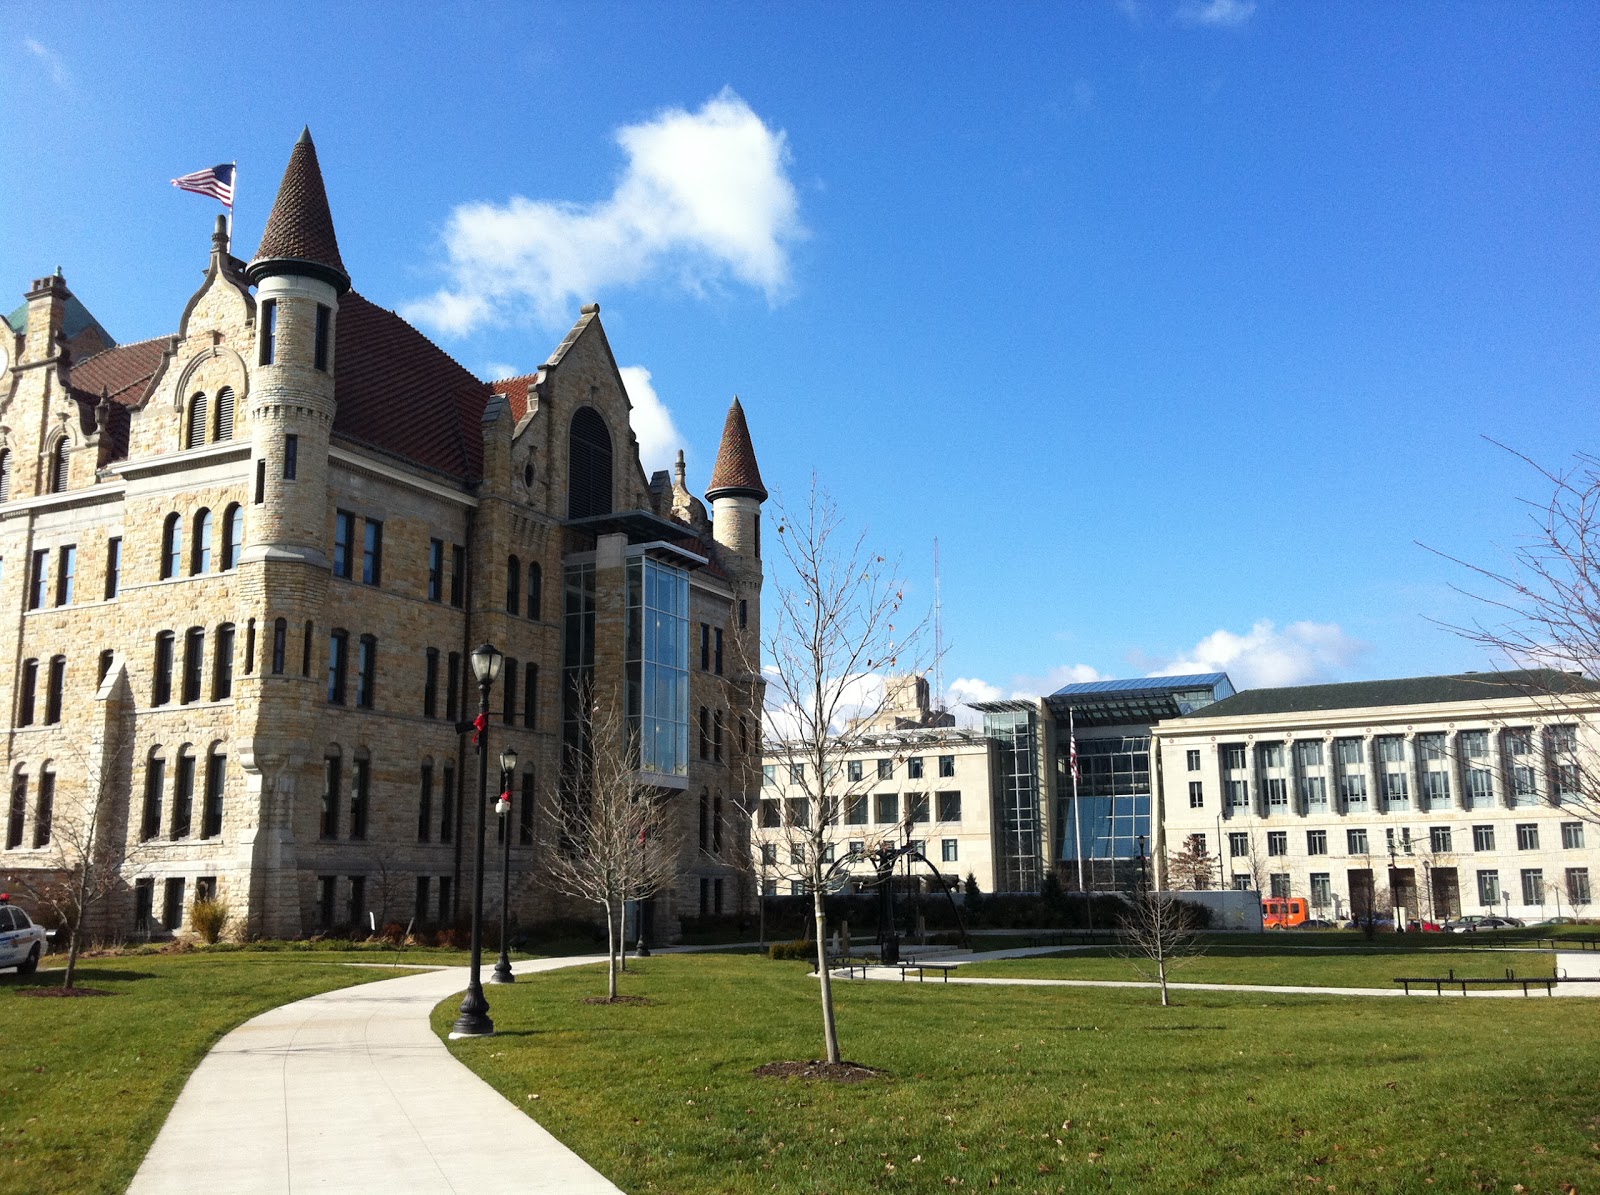 Scranton Courthouses Added to Pennsylvania Courthouses Photo Album.